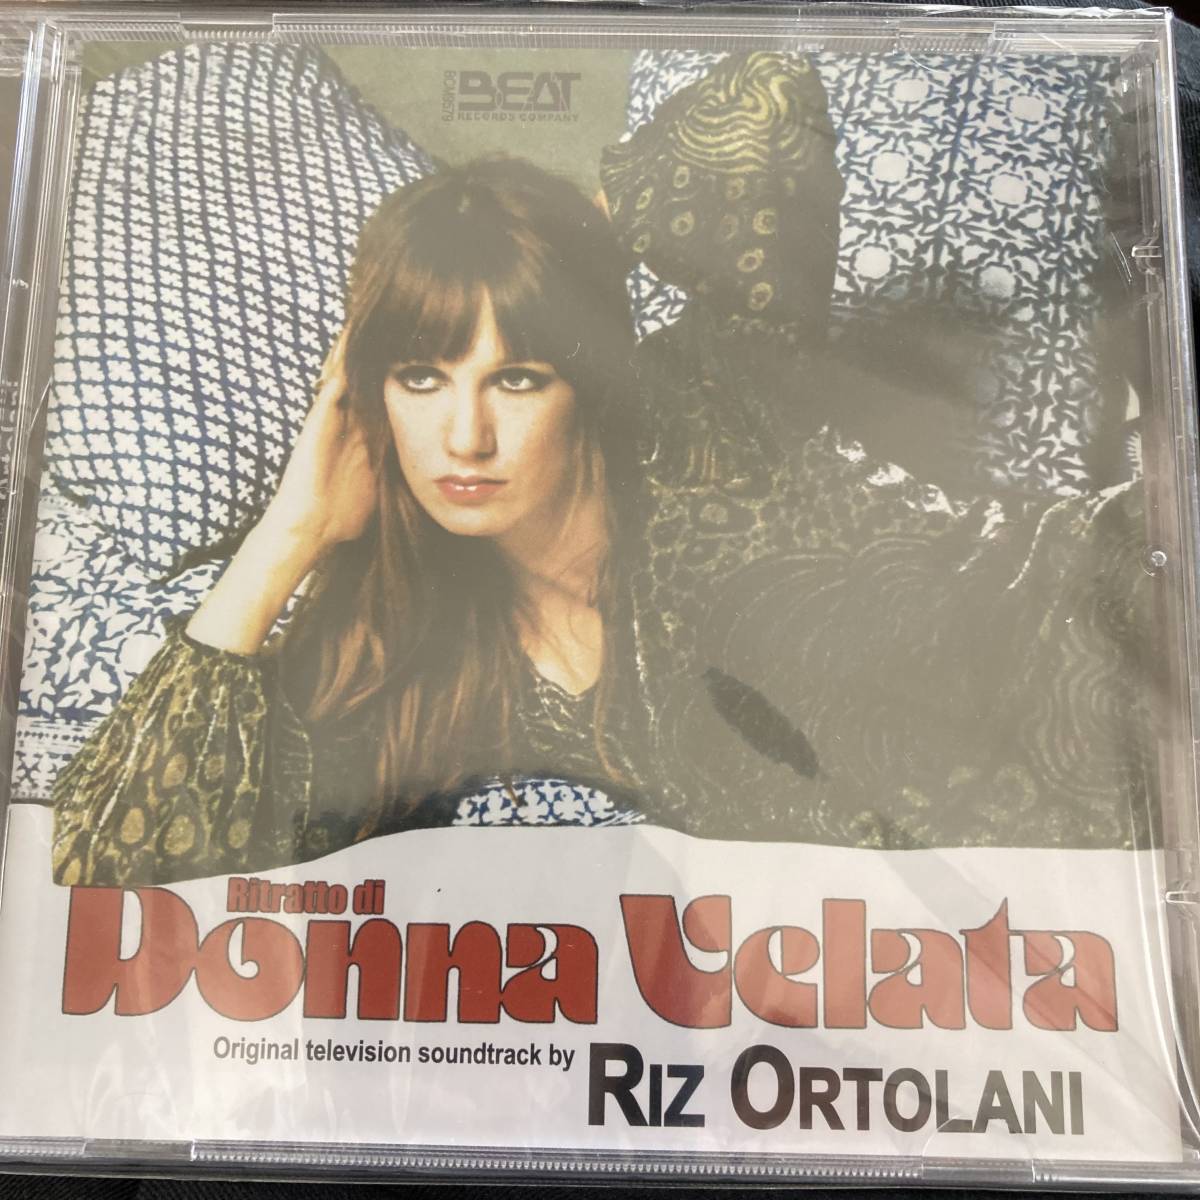 RITRATTE DI DONNA VELATA(lizoru tiger -ni| Italy record )